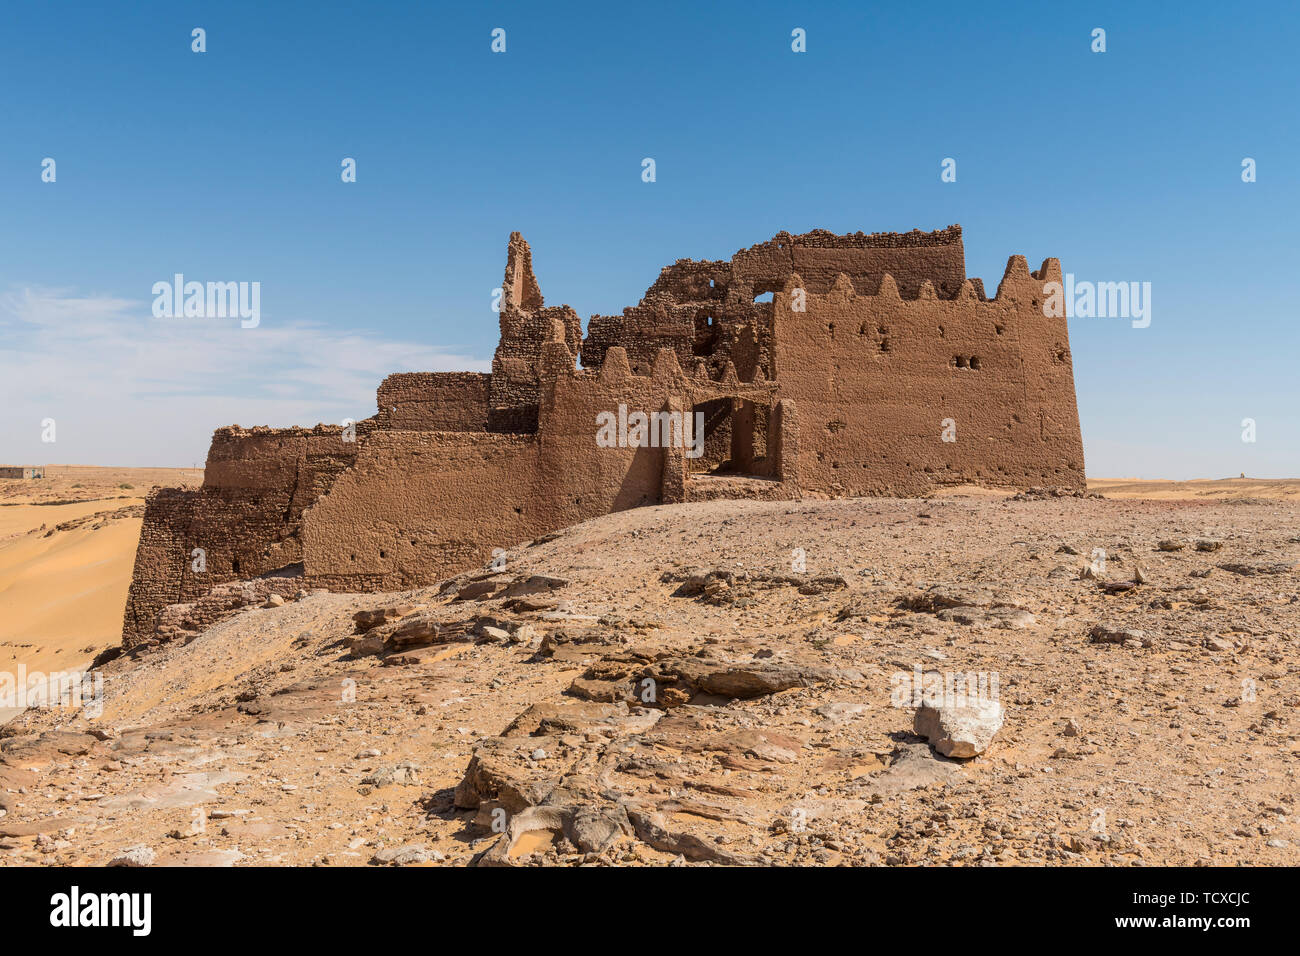 Alten ksar, alte Stadt in der Wüste, in der Nähe von Timimoun, westlichen Algerien, Nordafrika, Afrika Stockfoto